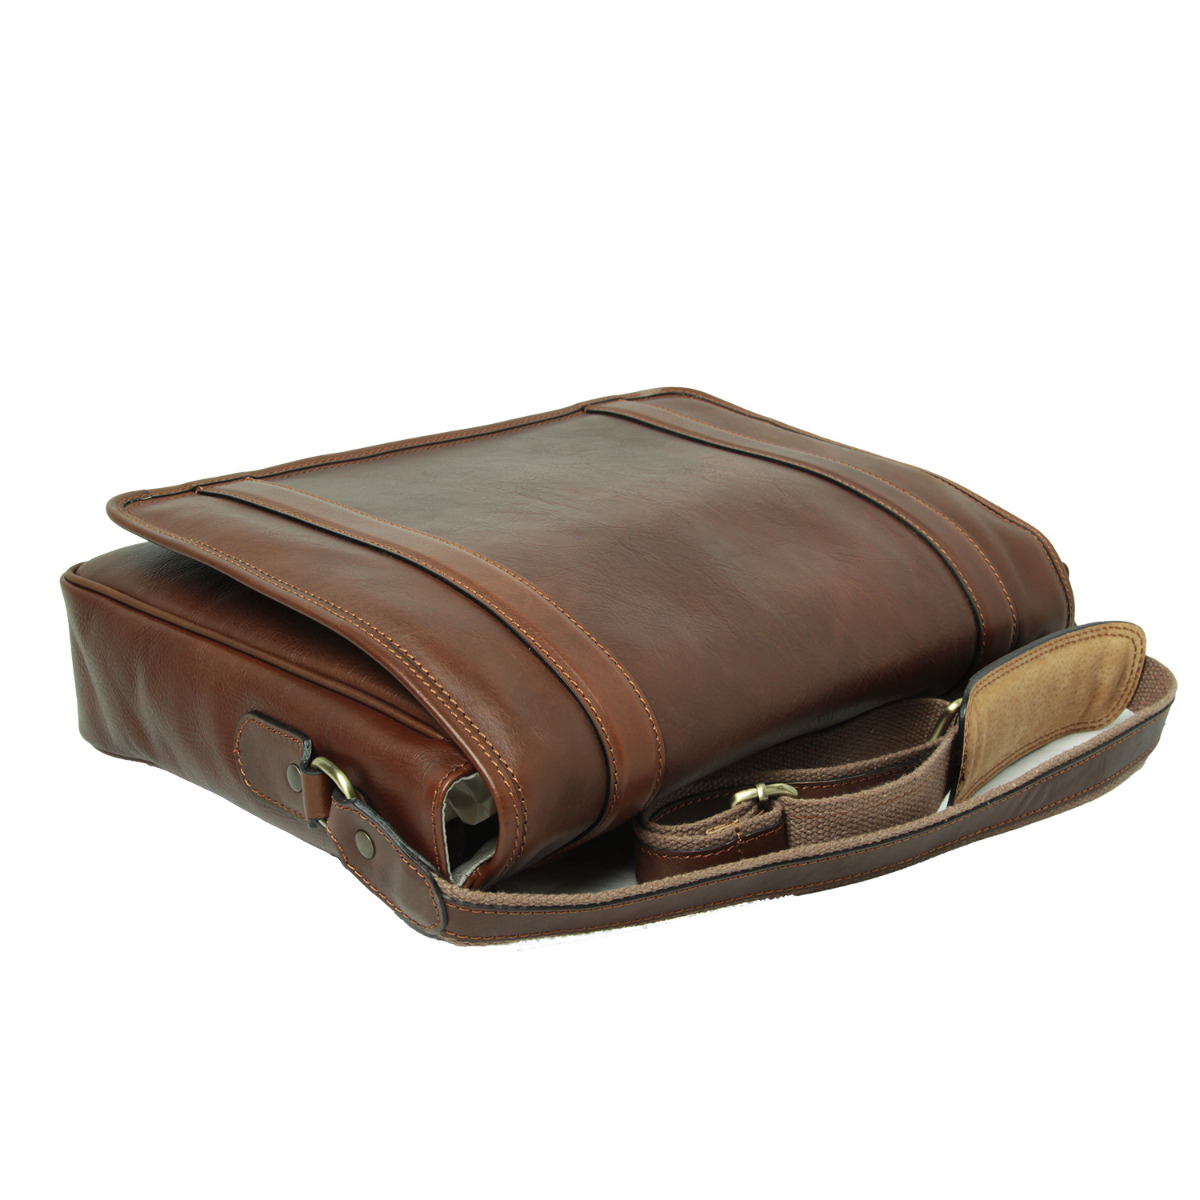 Soft Calfskin Leather Messenger Bag - Chestnut|030461CA|Old Angler Firenze